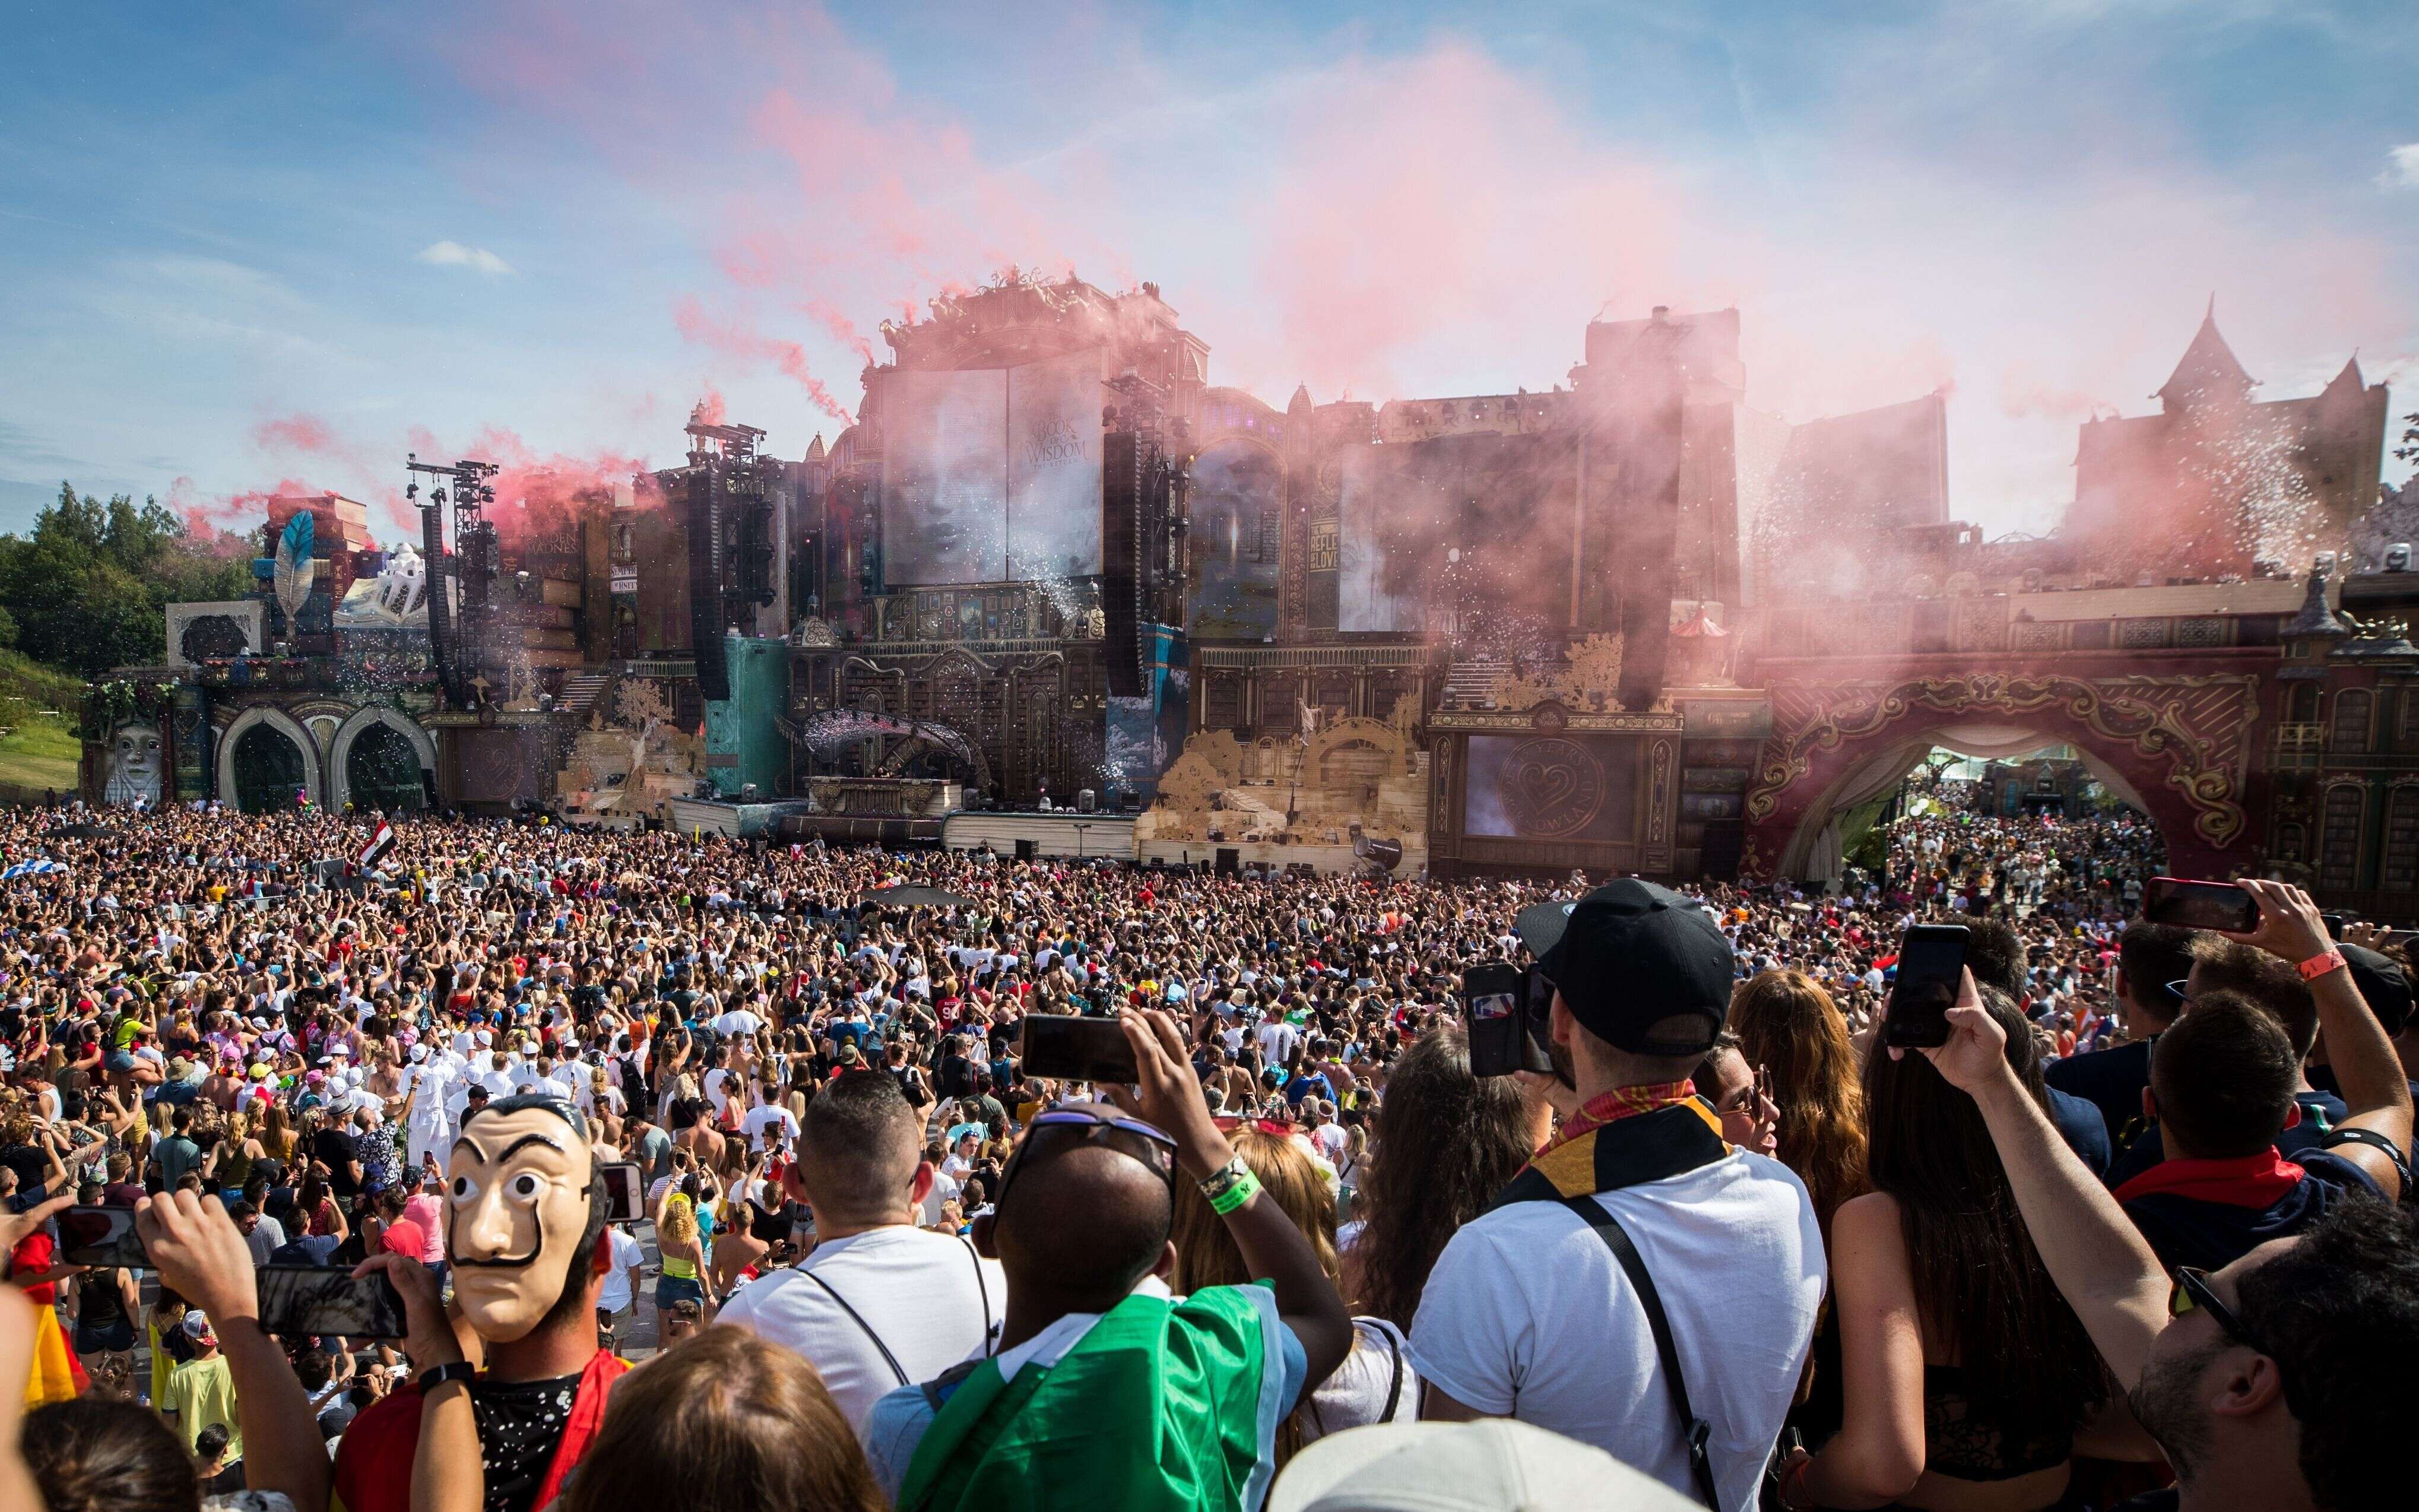 Près de 400.000 personnes sont attendues au festival de musique électronique Tomorrowland en Belgique.